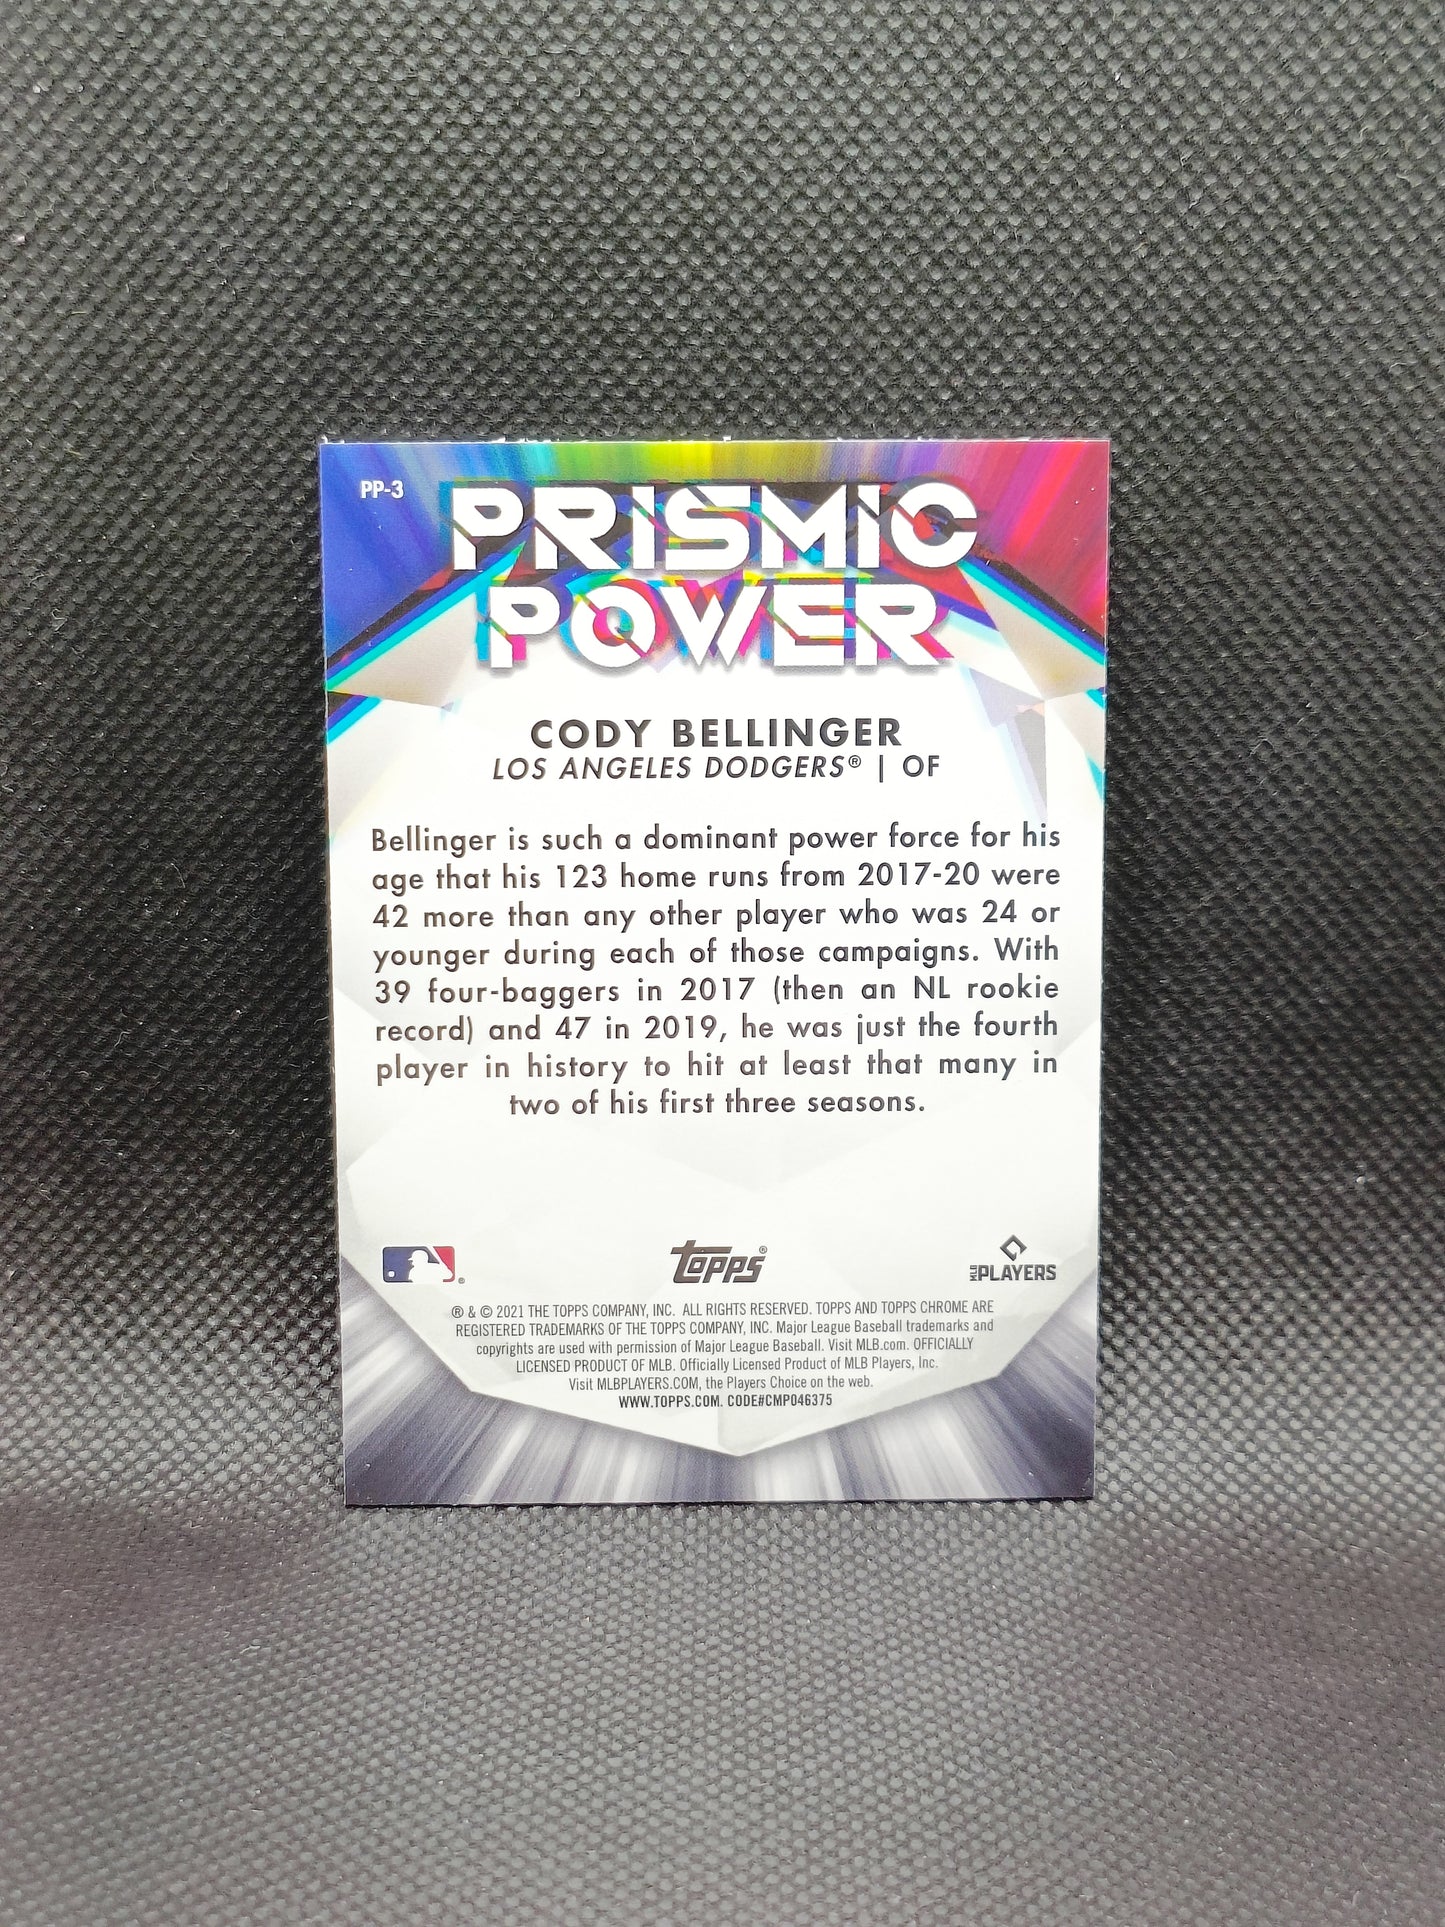 Cody Bellinger - 2021 Topps Chrome Prismic Power Insert - LA Dodgers